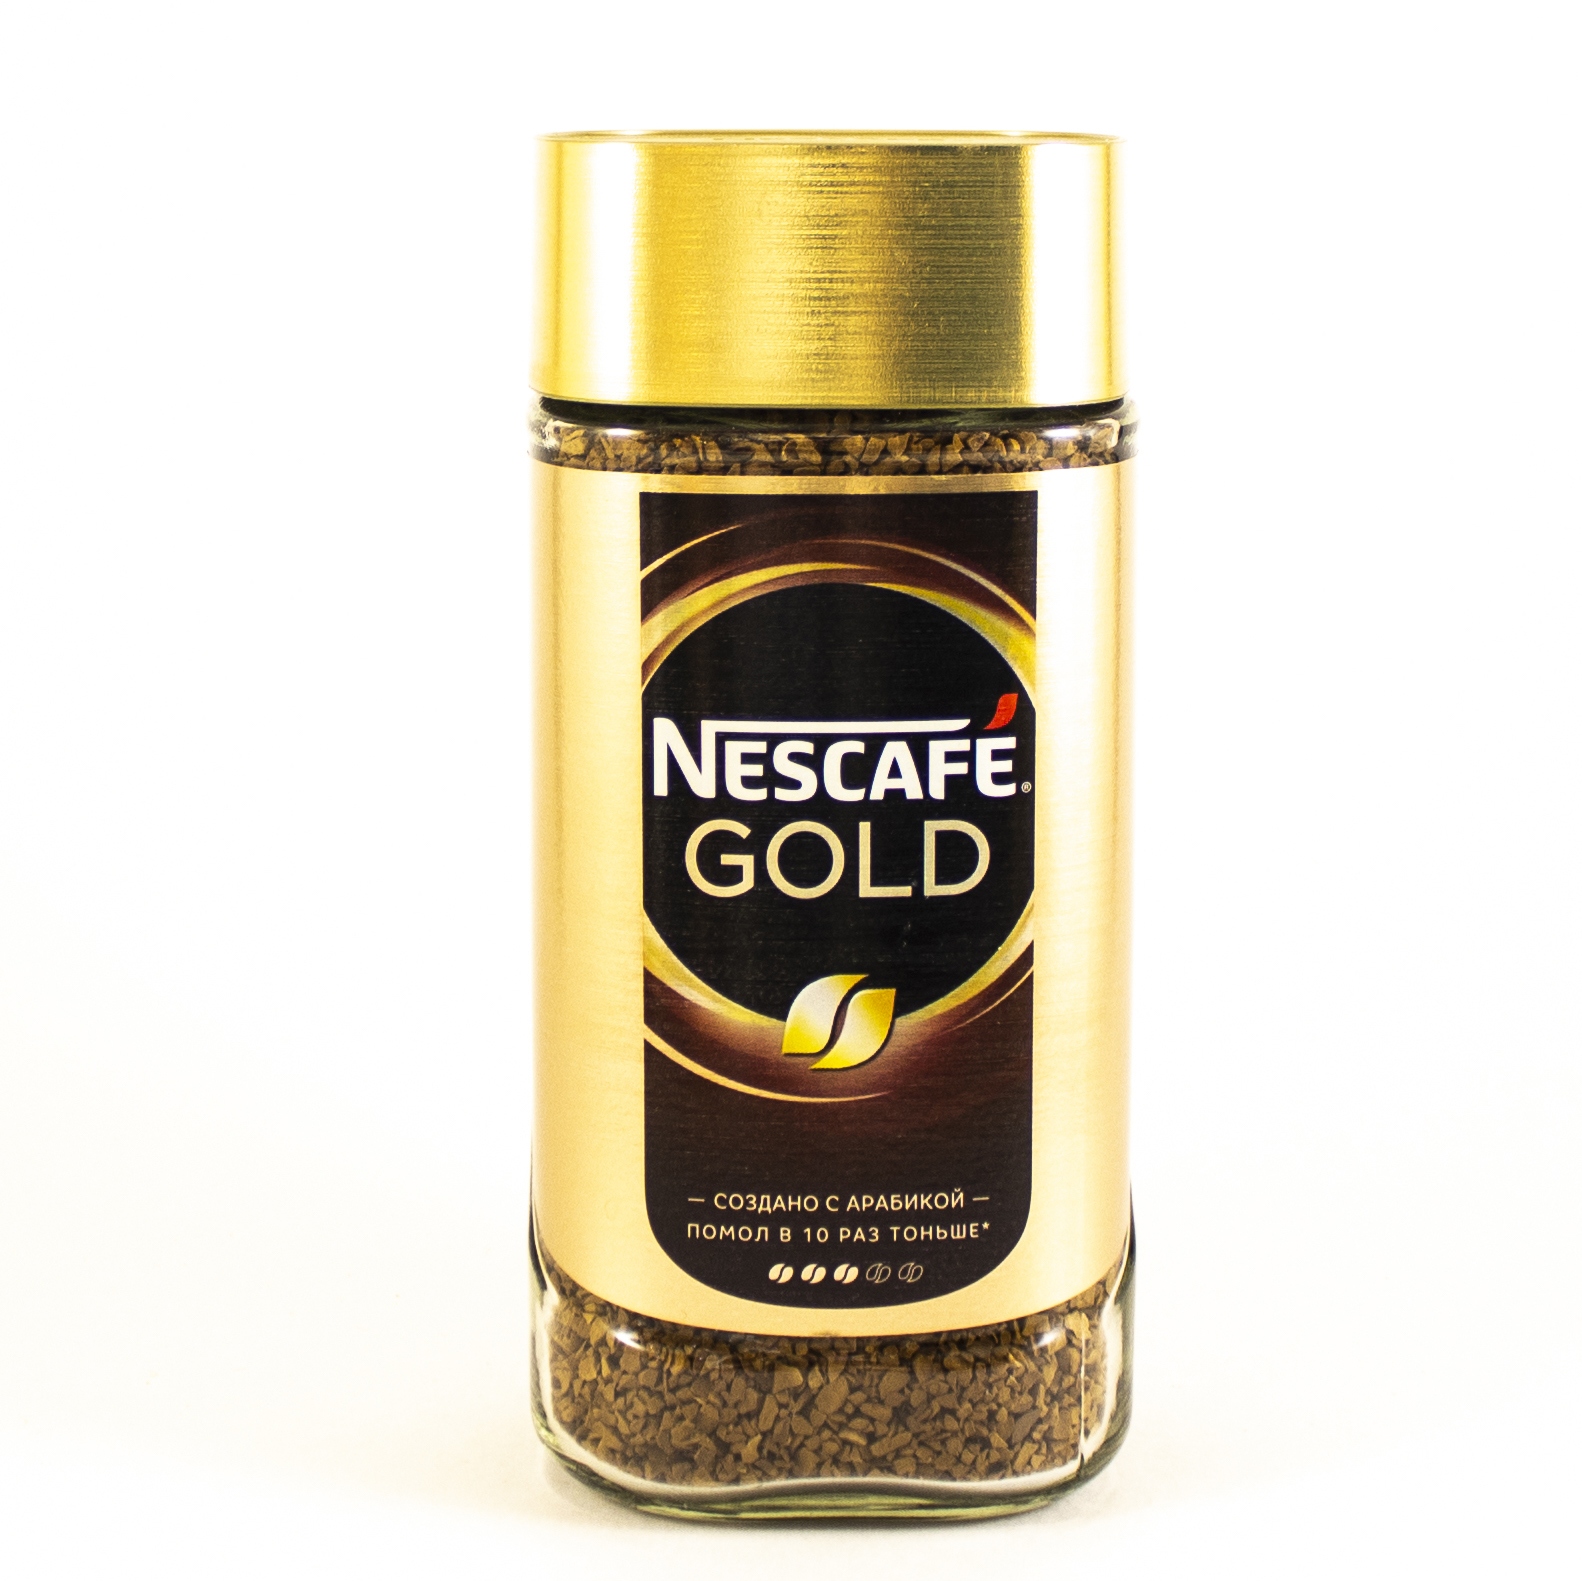 Nescafe gold 320. Кофе Нескафе Голд 190 гр. Кофе растворимый Нескафе Голд 190г. Кофе Nescafe Gold 190г. Кофе "Nescafe" Голд 190г.